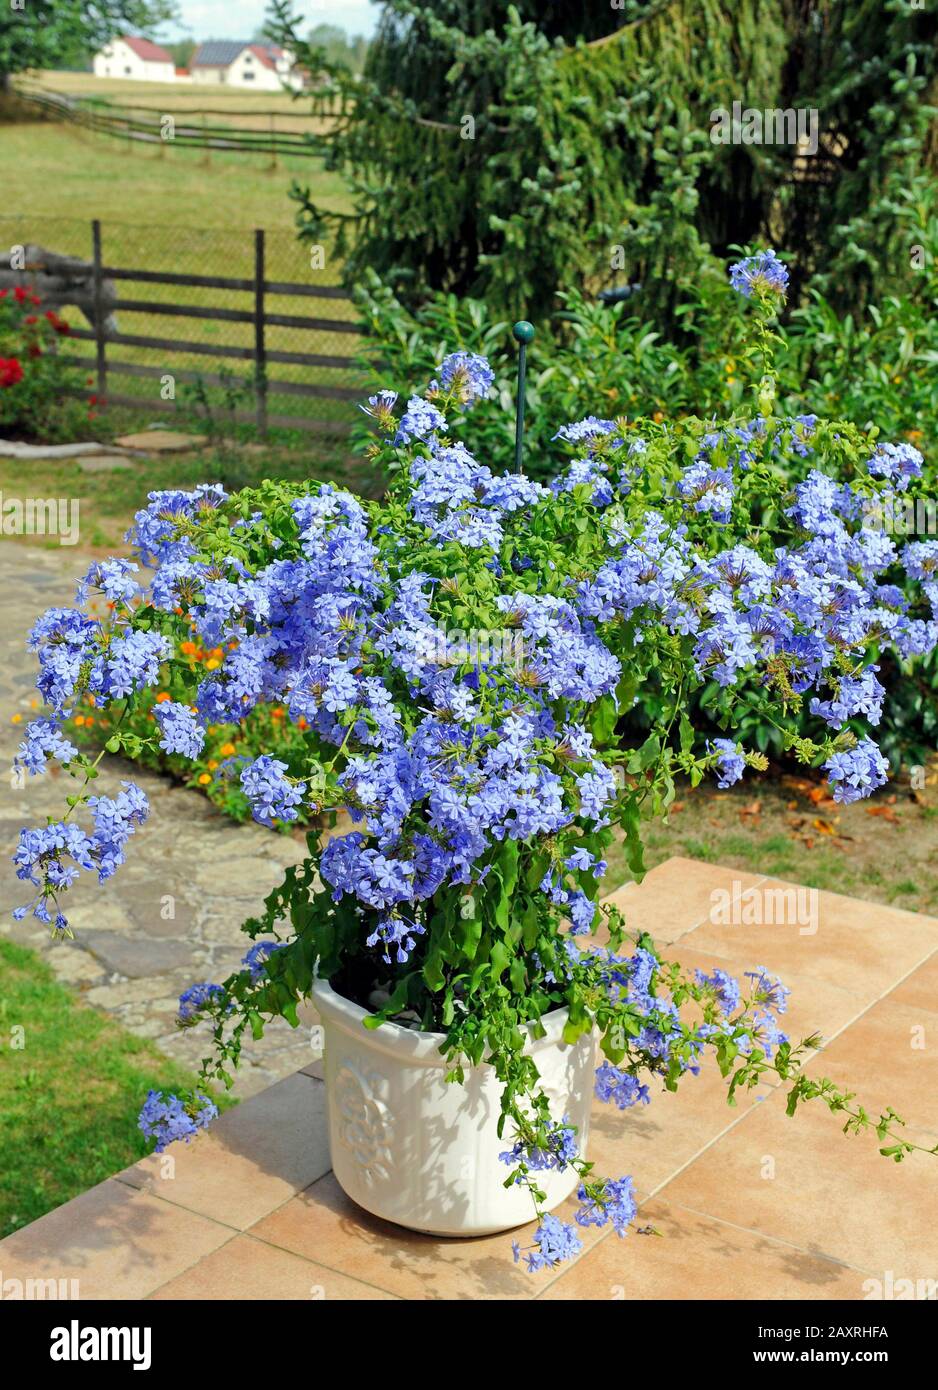 Ludro fiore leadwort o plumbago come pianta in vaso su una terrazza estiva Foto Stock